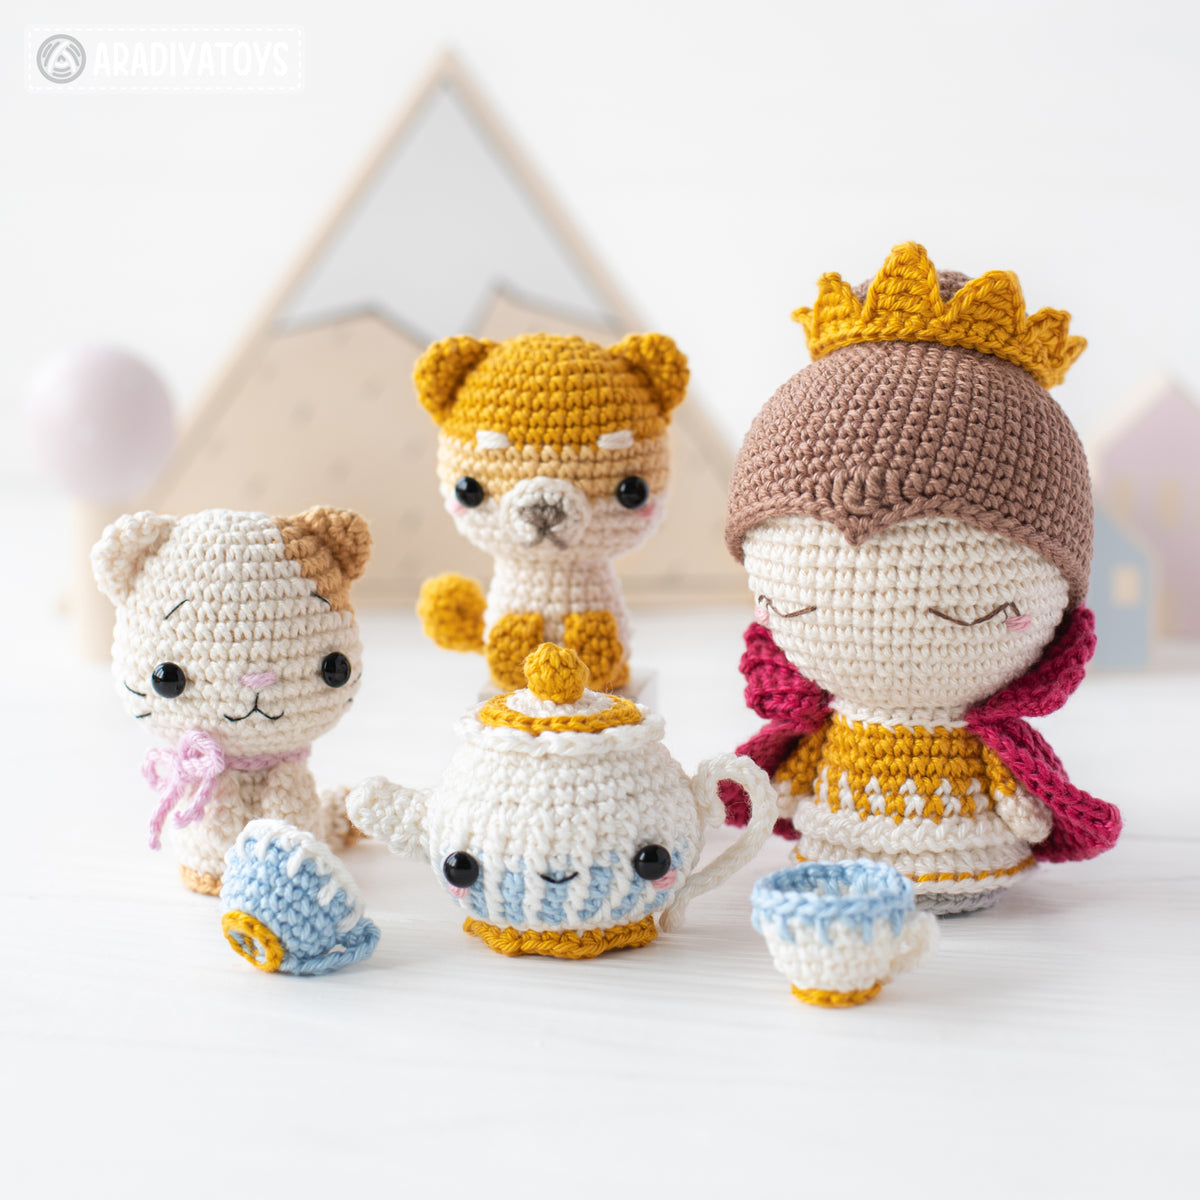 Royal Family from “Mini Kingdom” collection / crochet patterns by Arad –  AradiyaToys